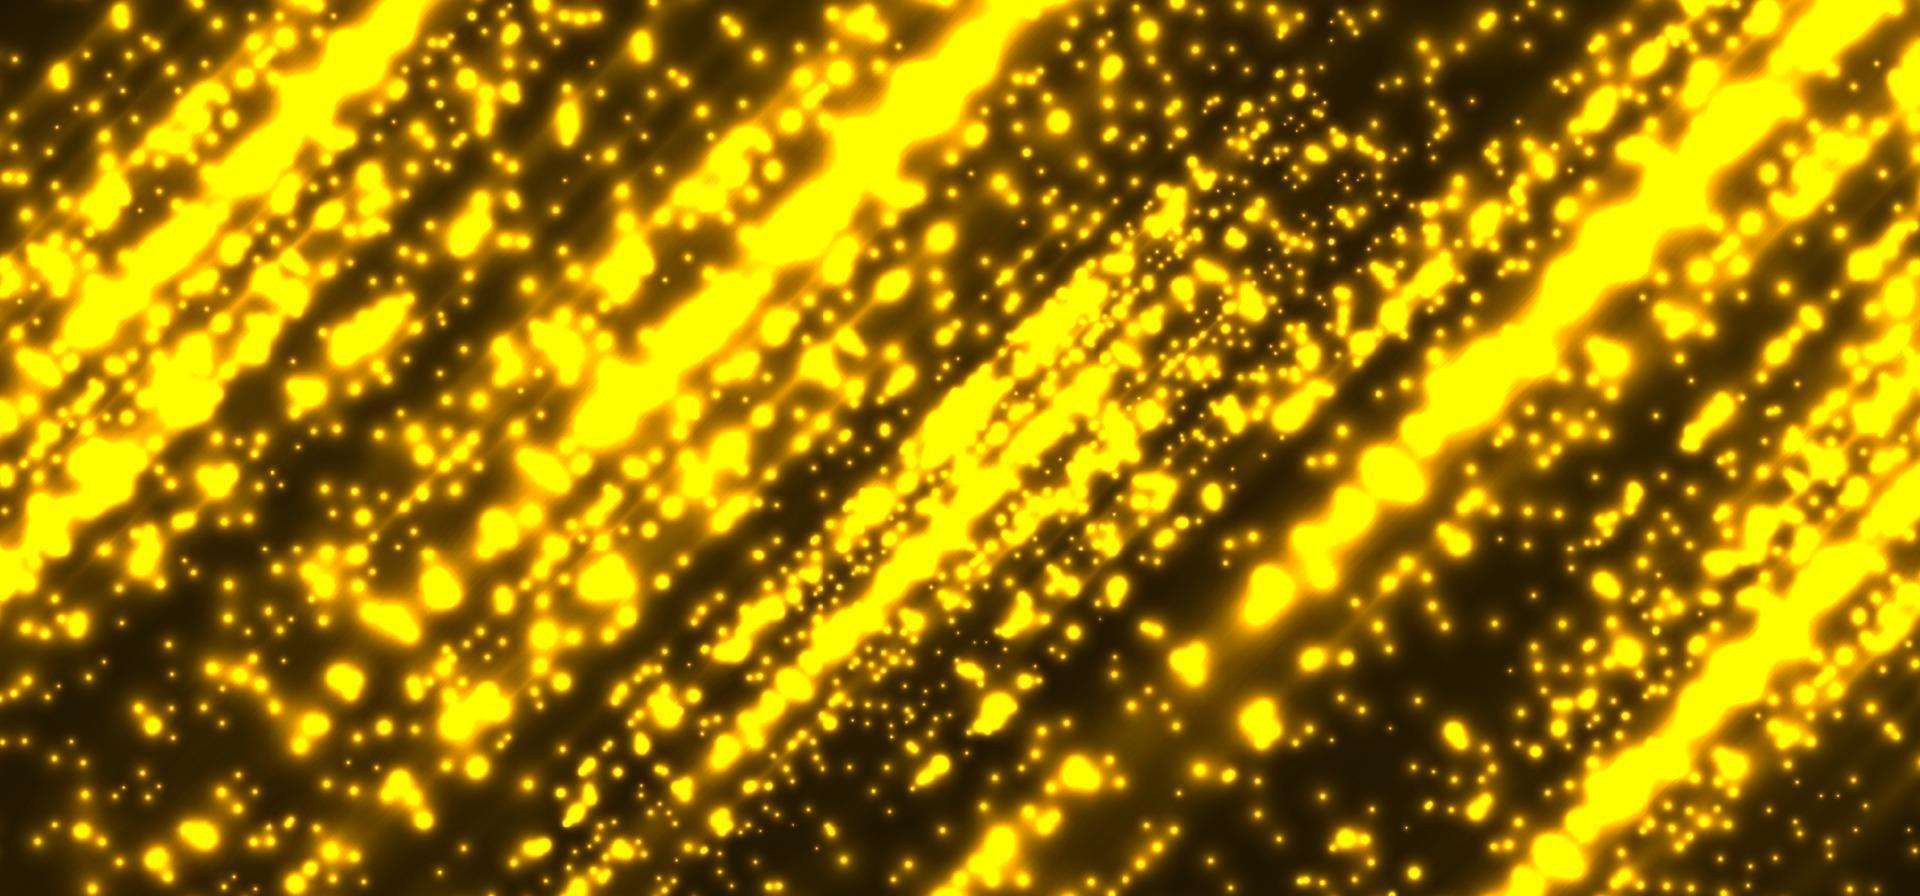 abstracte technologie futuristische gele magische deeltjeslijnen, licht sprankelend glitter op donkere achtergrond vector